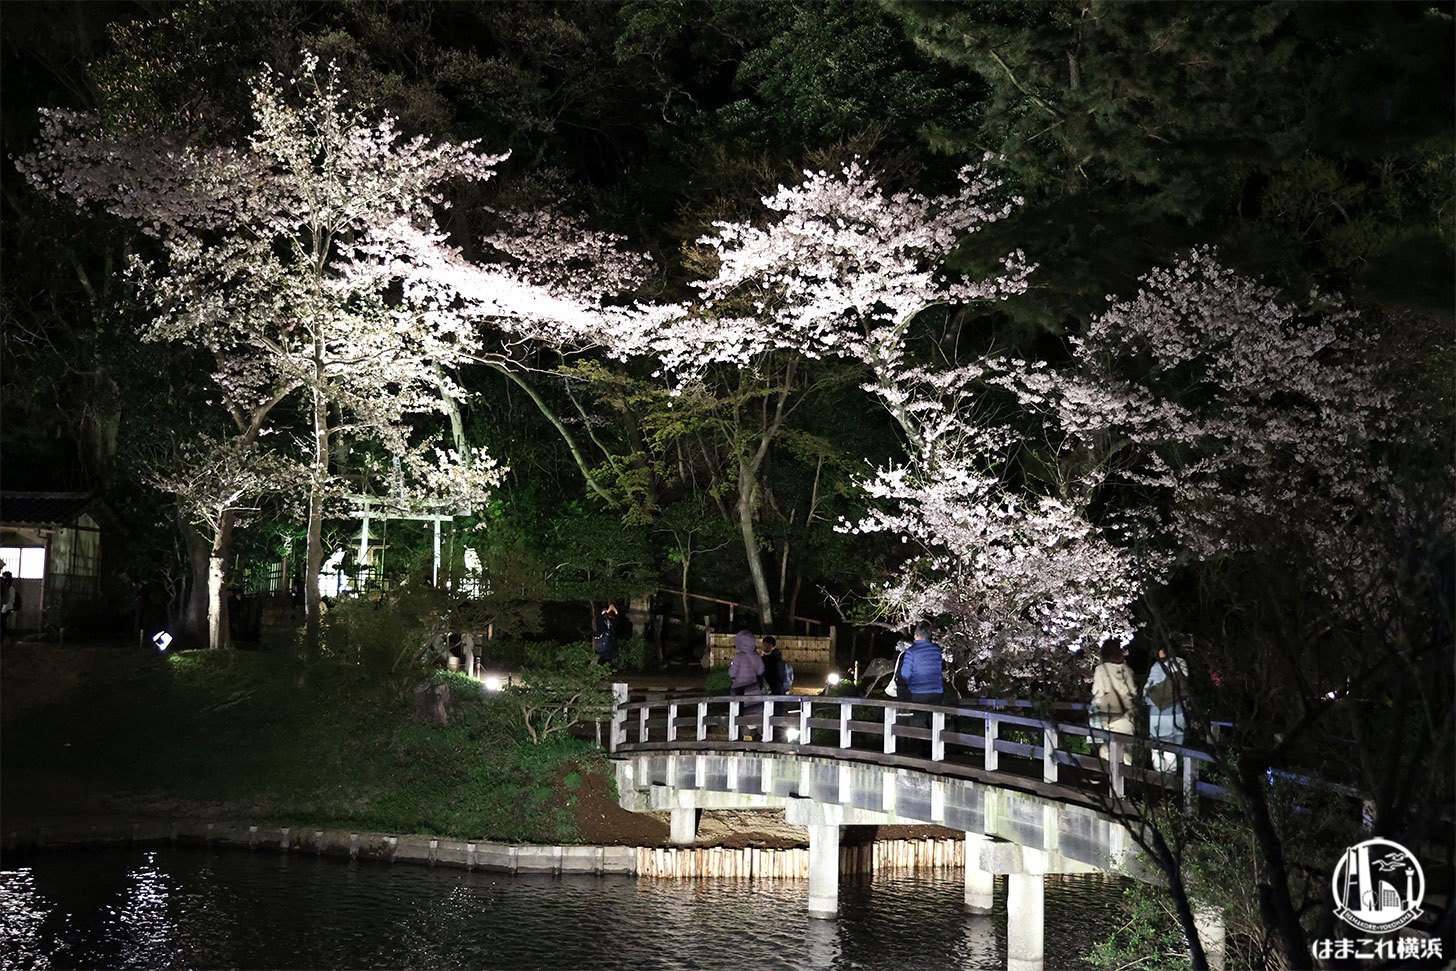 三溪園 桜と橋のライトアップと橋の競演